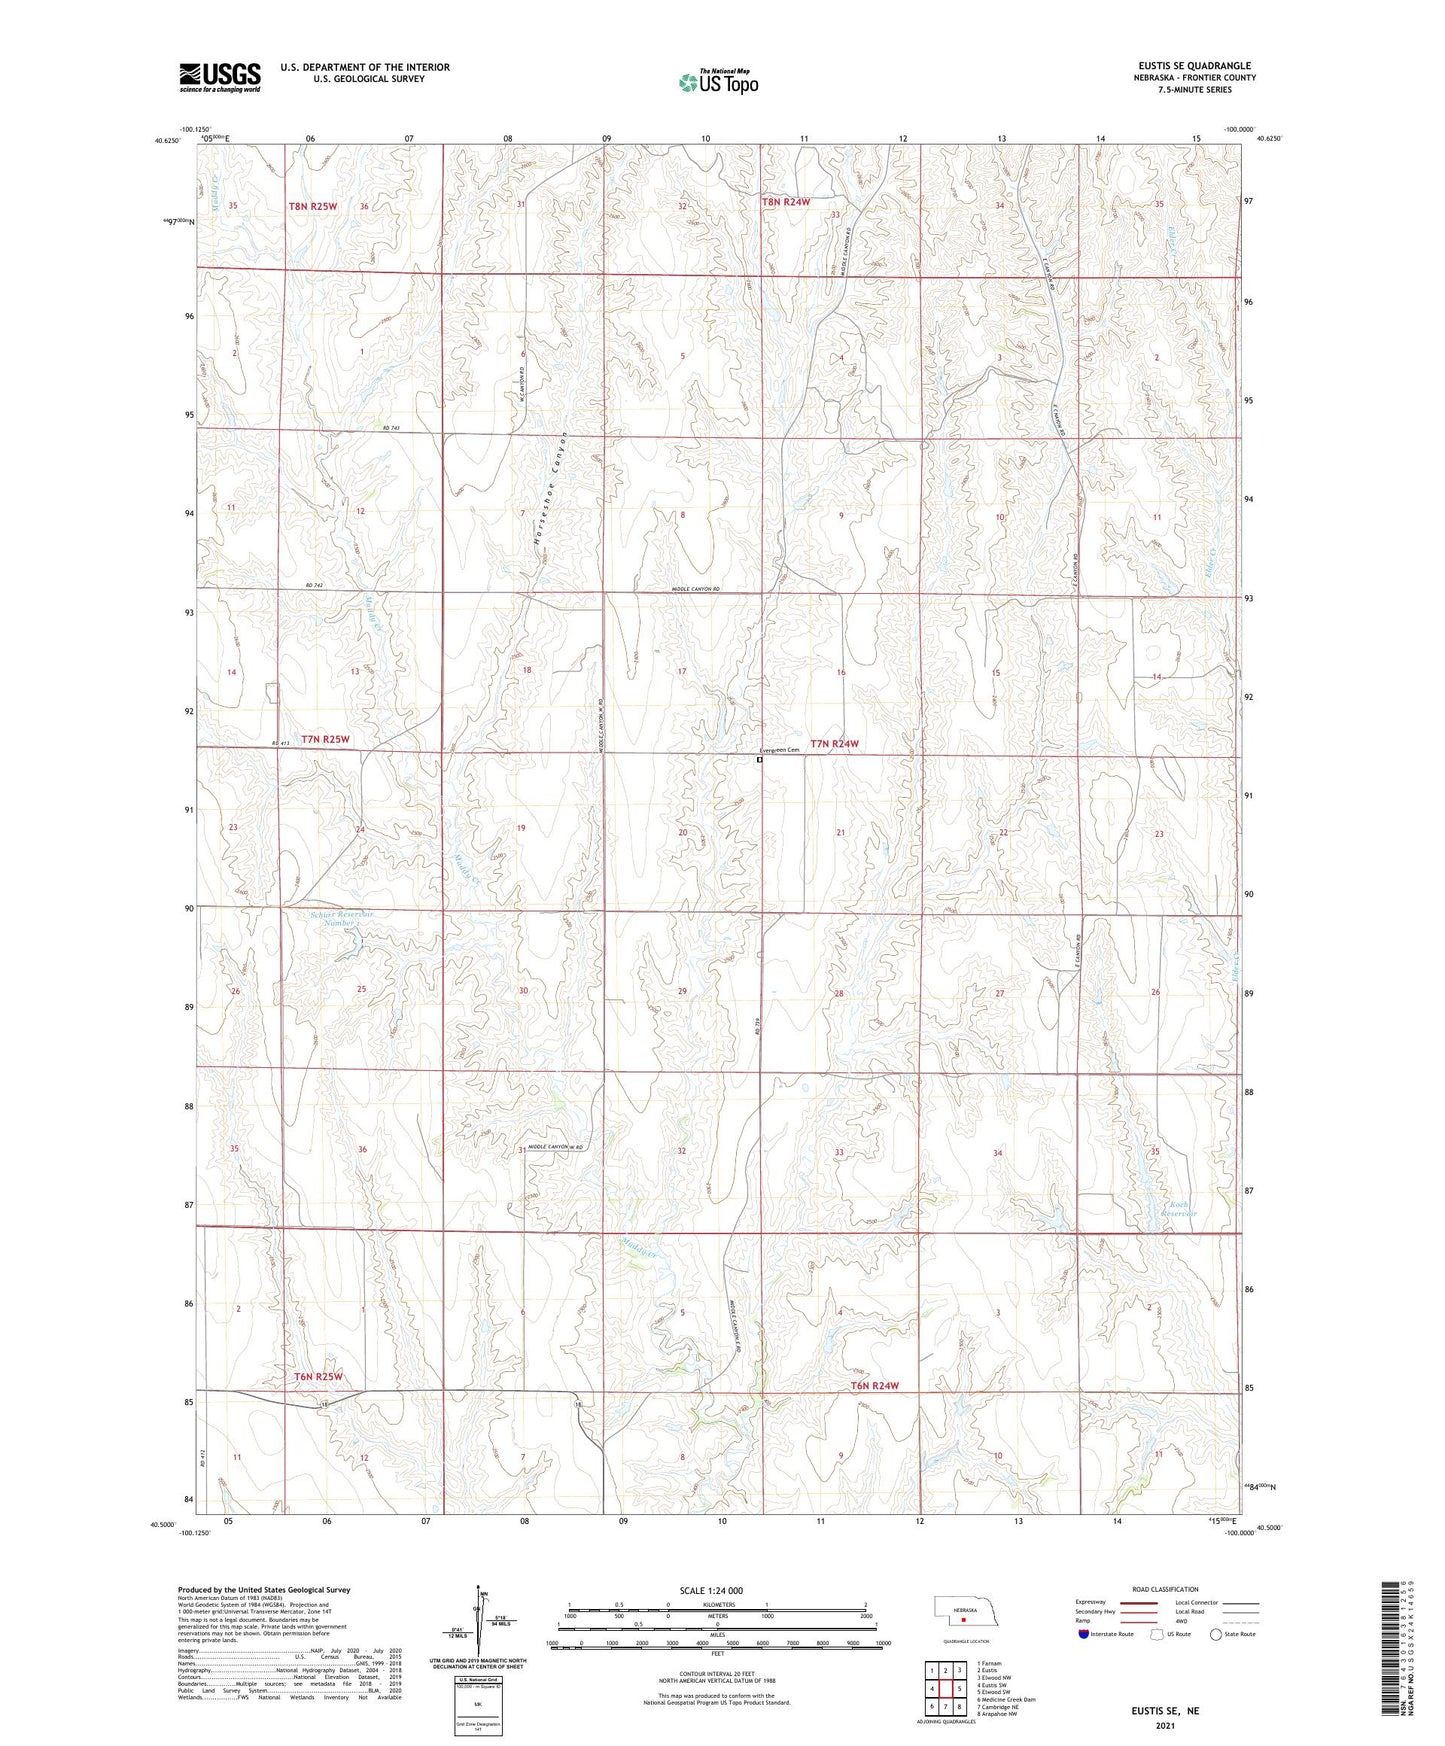 Eustis SE Nebraska US Topo Map Image